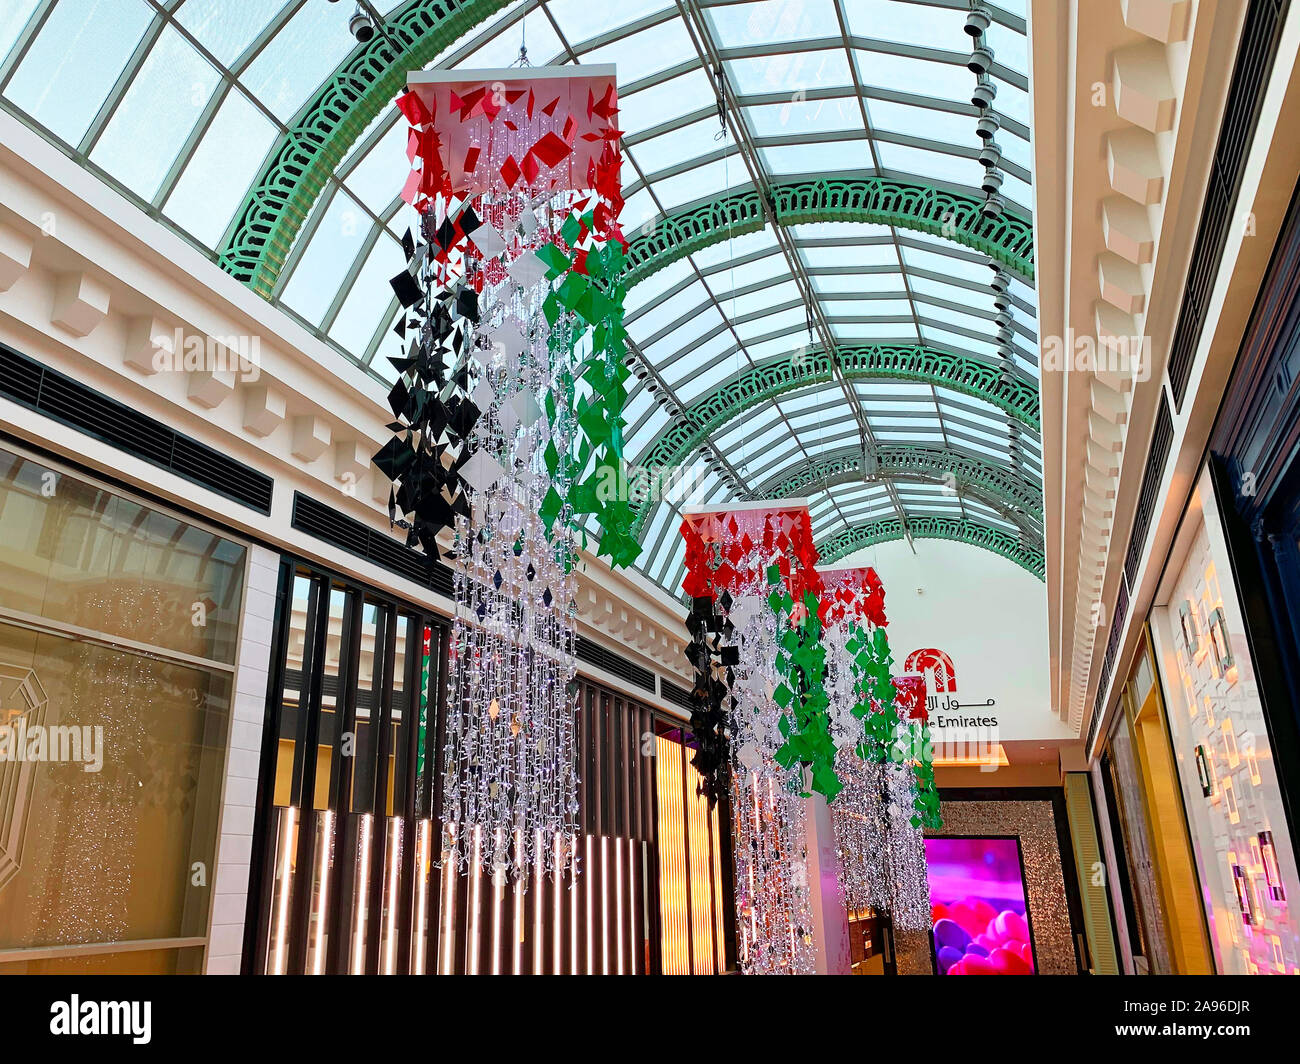 Dubaï / Emirats arabes unis - 10 novembre 2019 : centre commercial Mall of the Emirates décorations pour Fête Nationale. Décoration drapeaux nationaux des EAU. Célébration de la journée nationale des EAU Banque D'Images